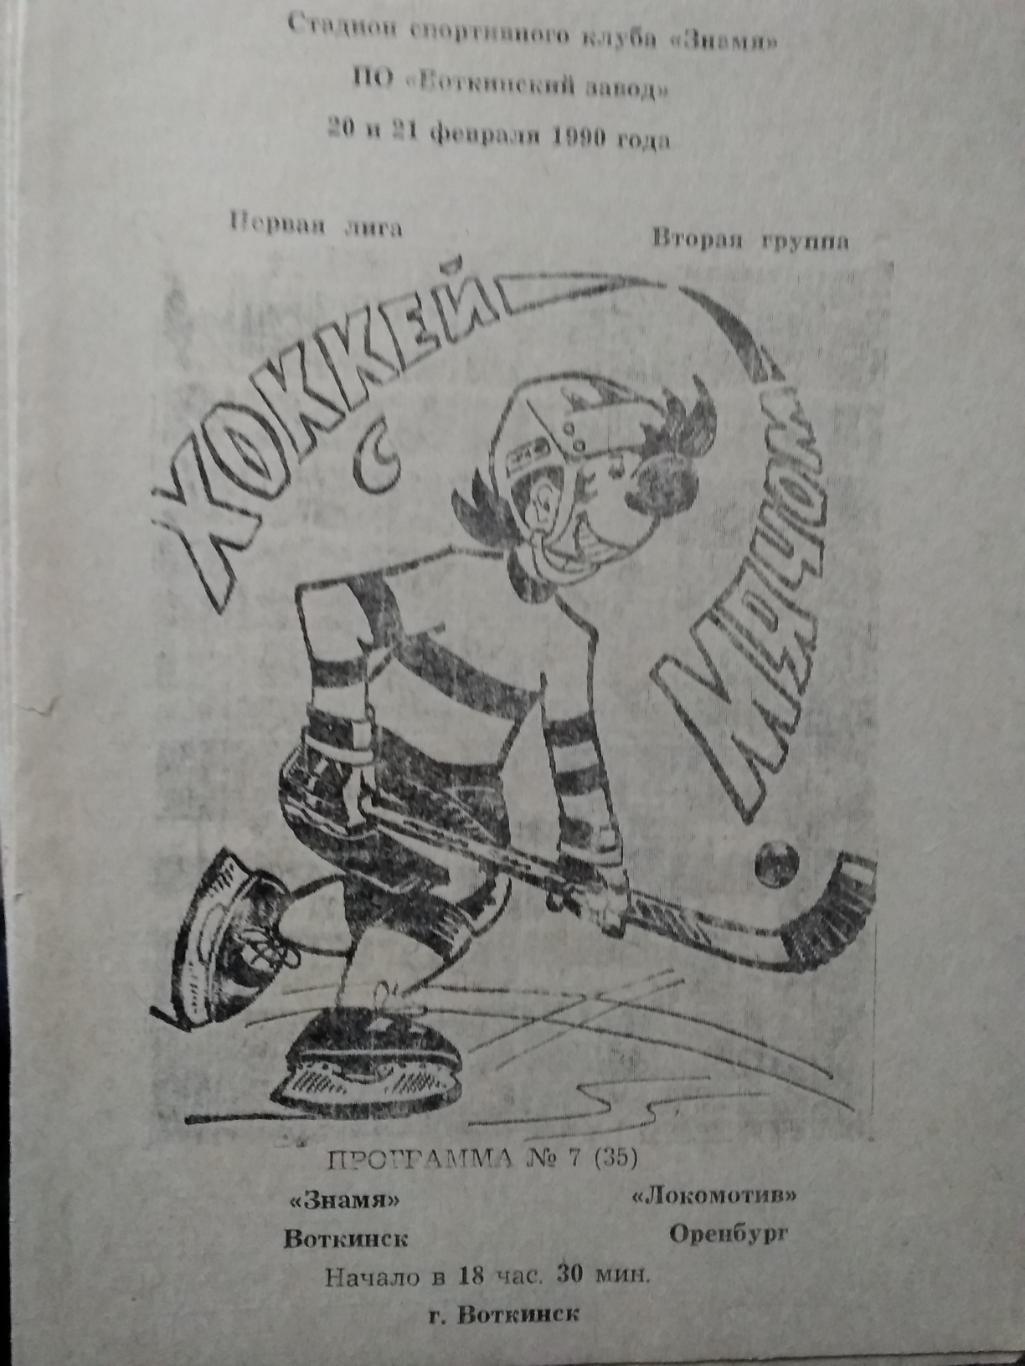 Знамя (Воткинск) - Локомотив (Оренбург). 20-21 февраля 1990.